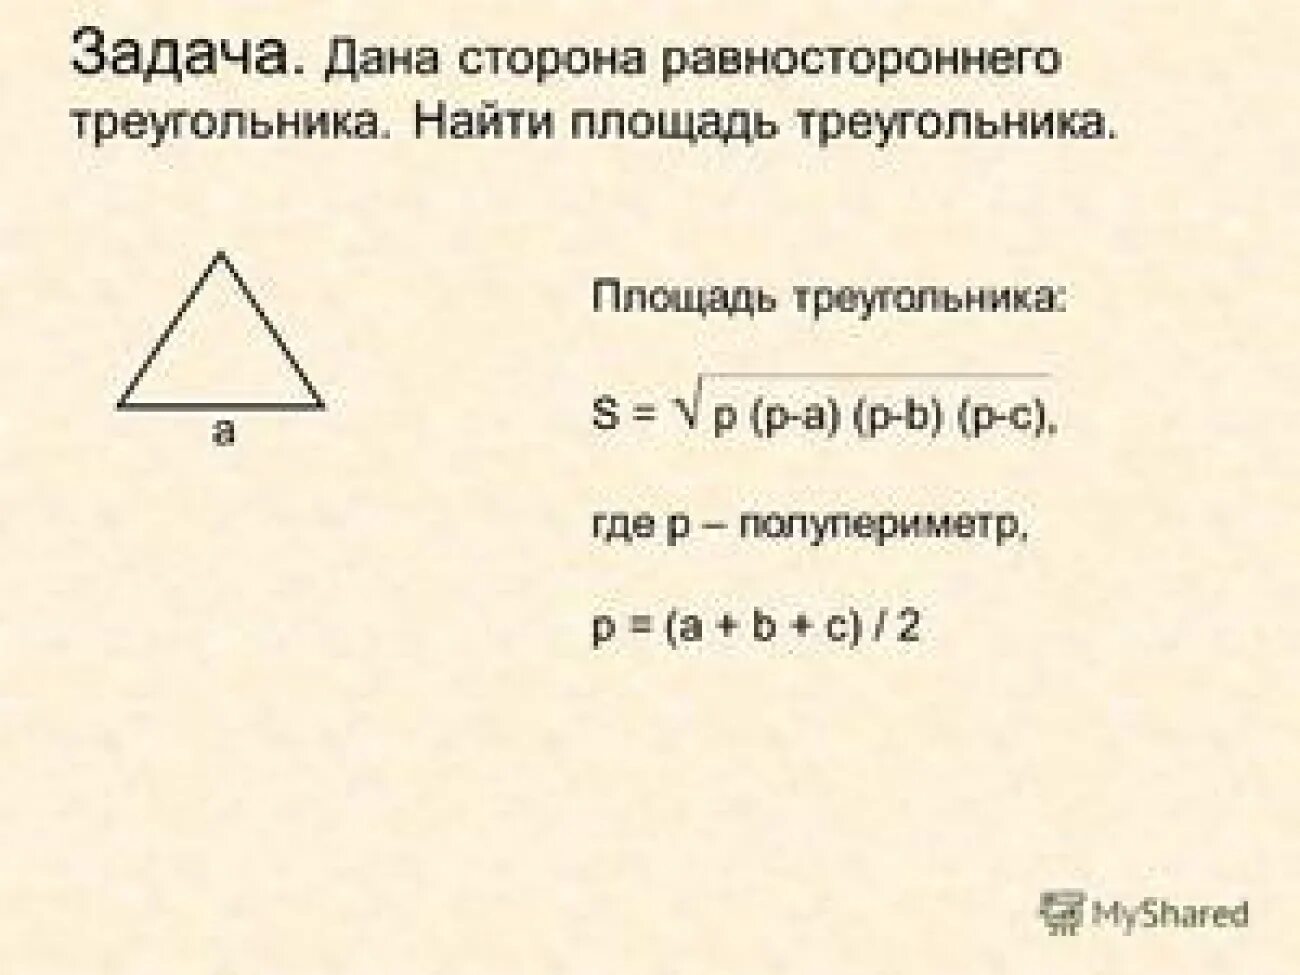 Калькулятор по трем сторонам. Формула нахождения площади треугольника по 3 сторонам. Площадь треугольника формула по трем сторонам 3. Площадь треугольника формула по трем сторонам 4. Площадь треугольника по 3 сторонам формула.